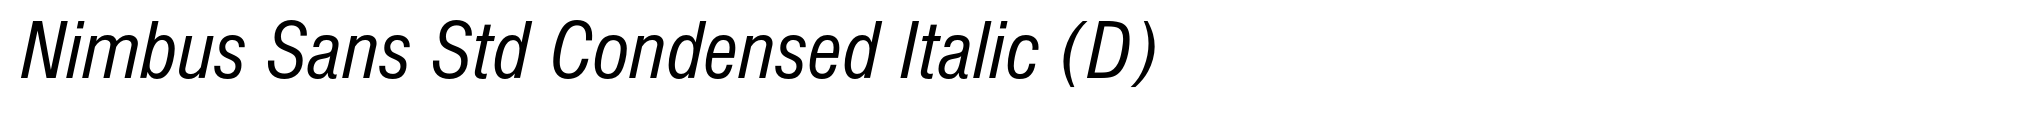 Nimbus Sans Std Condensed Italic (D) image